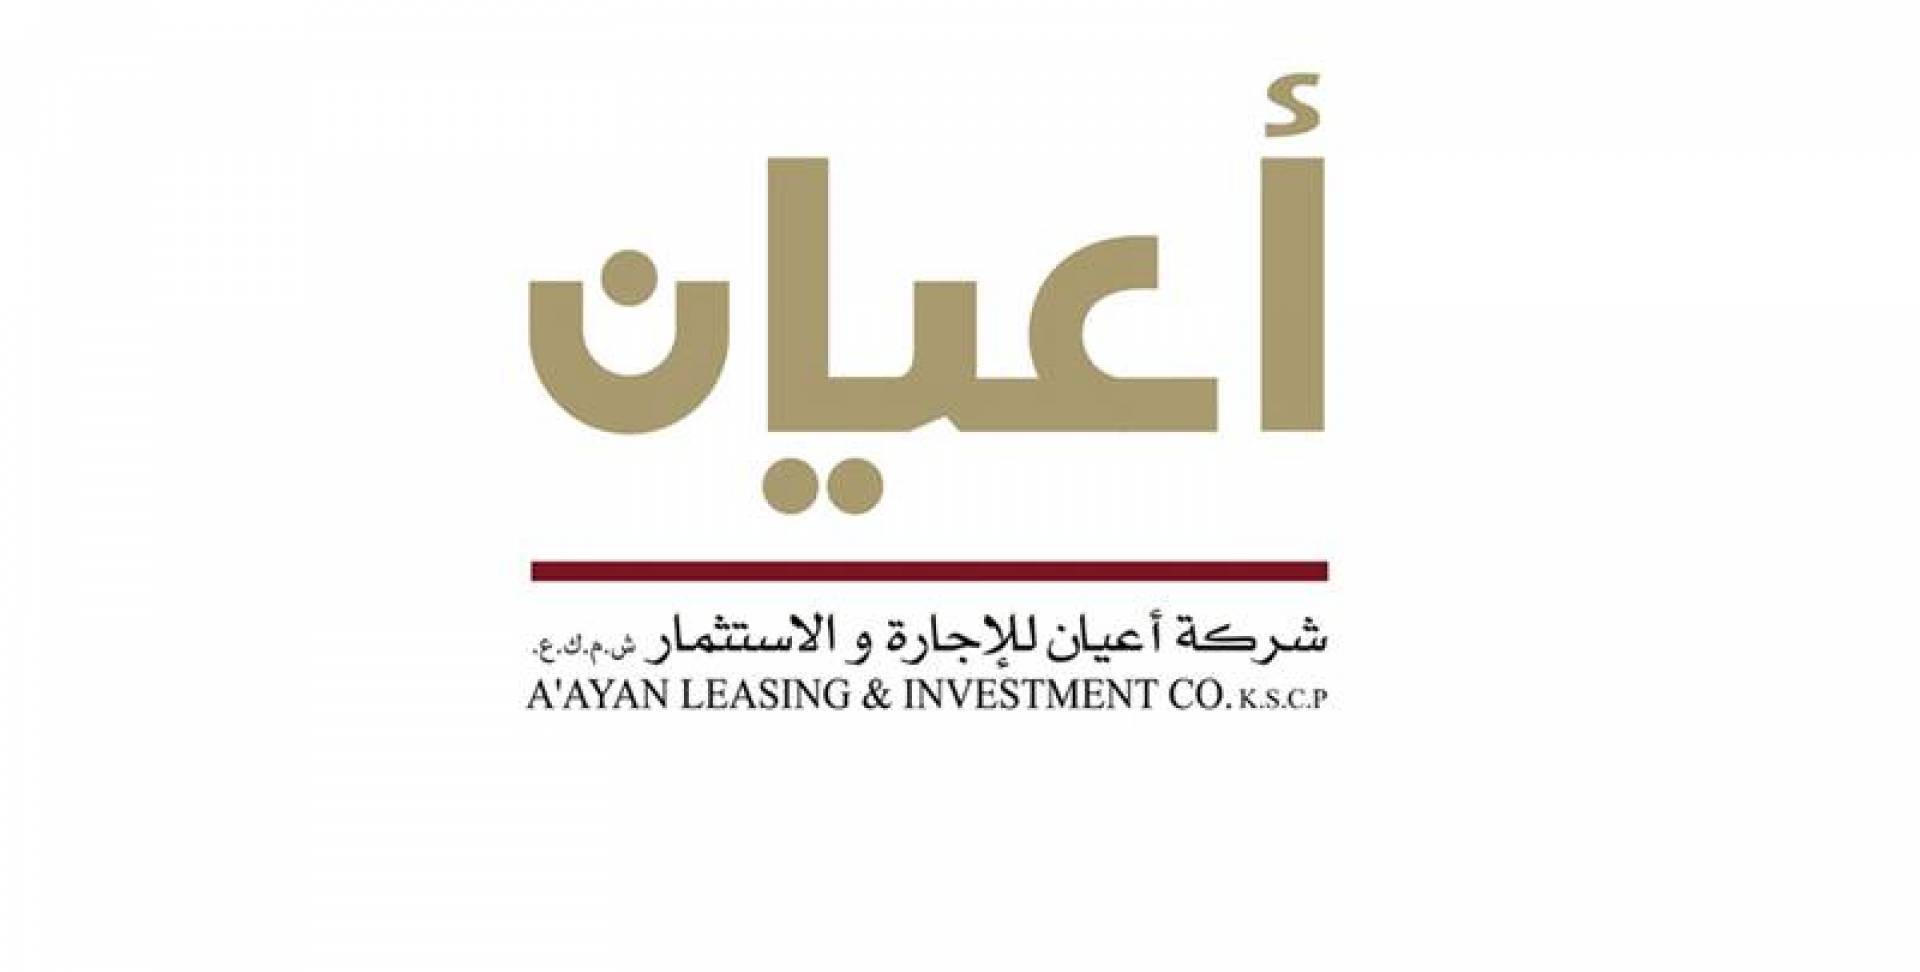 الكويت: شركة أعيان للإجارة تعلن أرباحها بالربع الأول